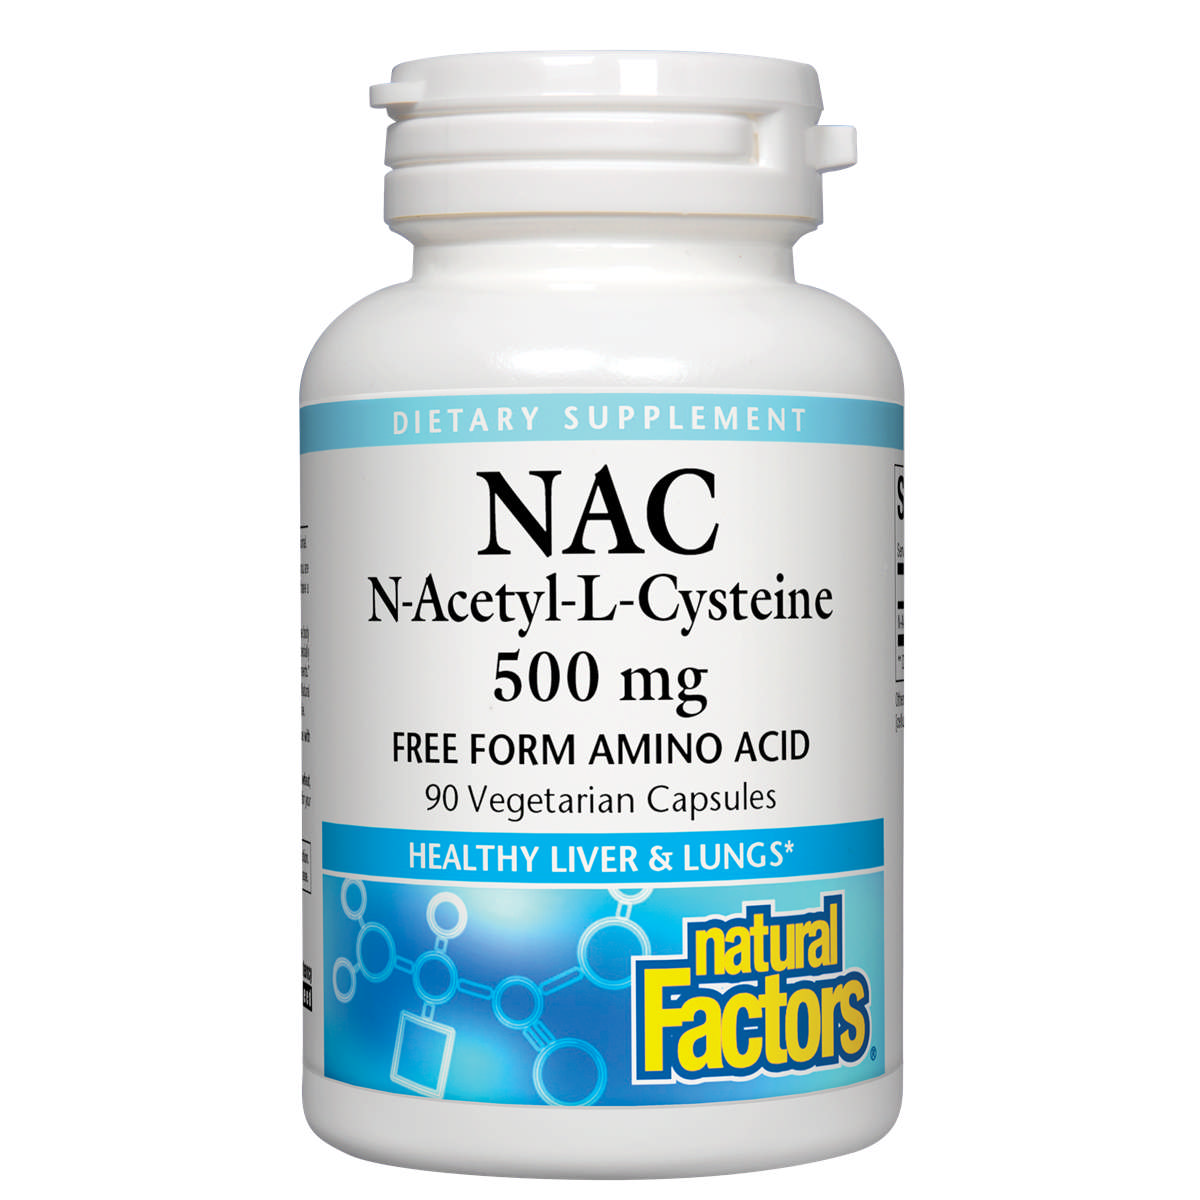 Natural Factors - N A C 500 mg